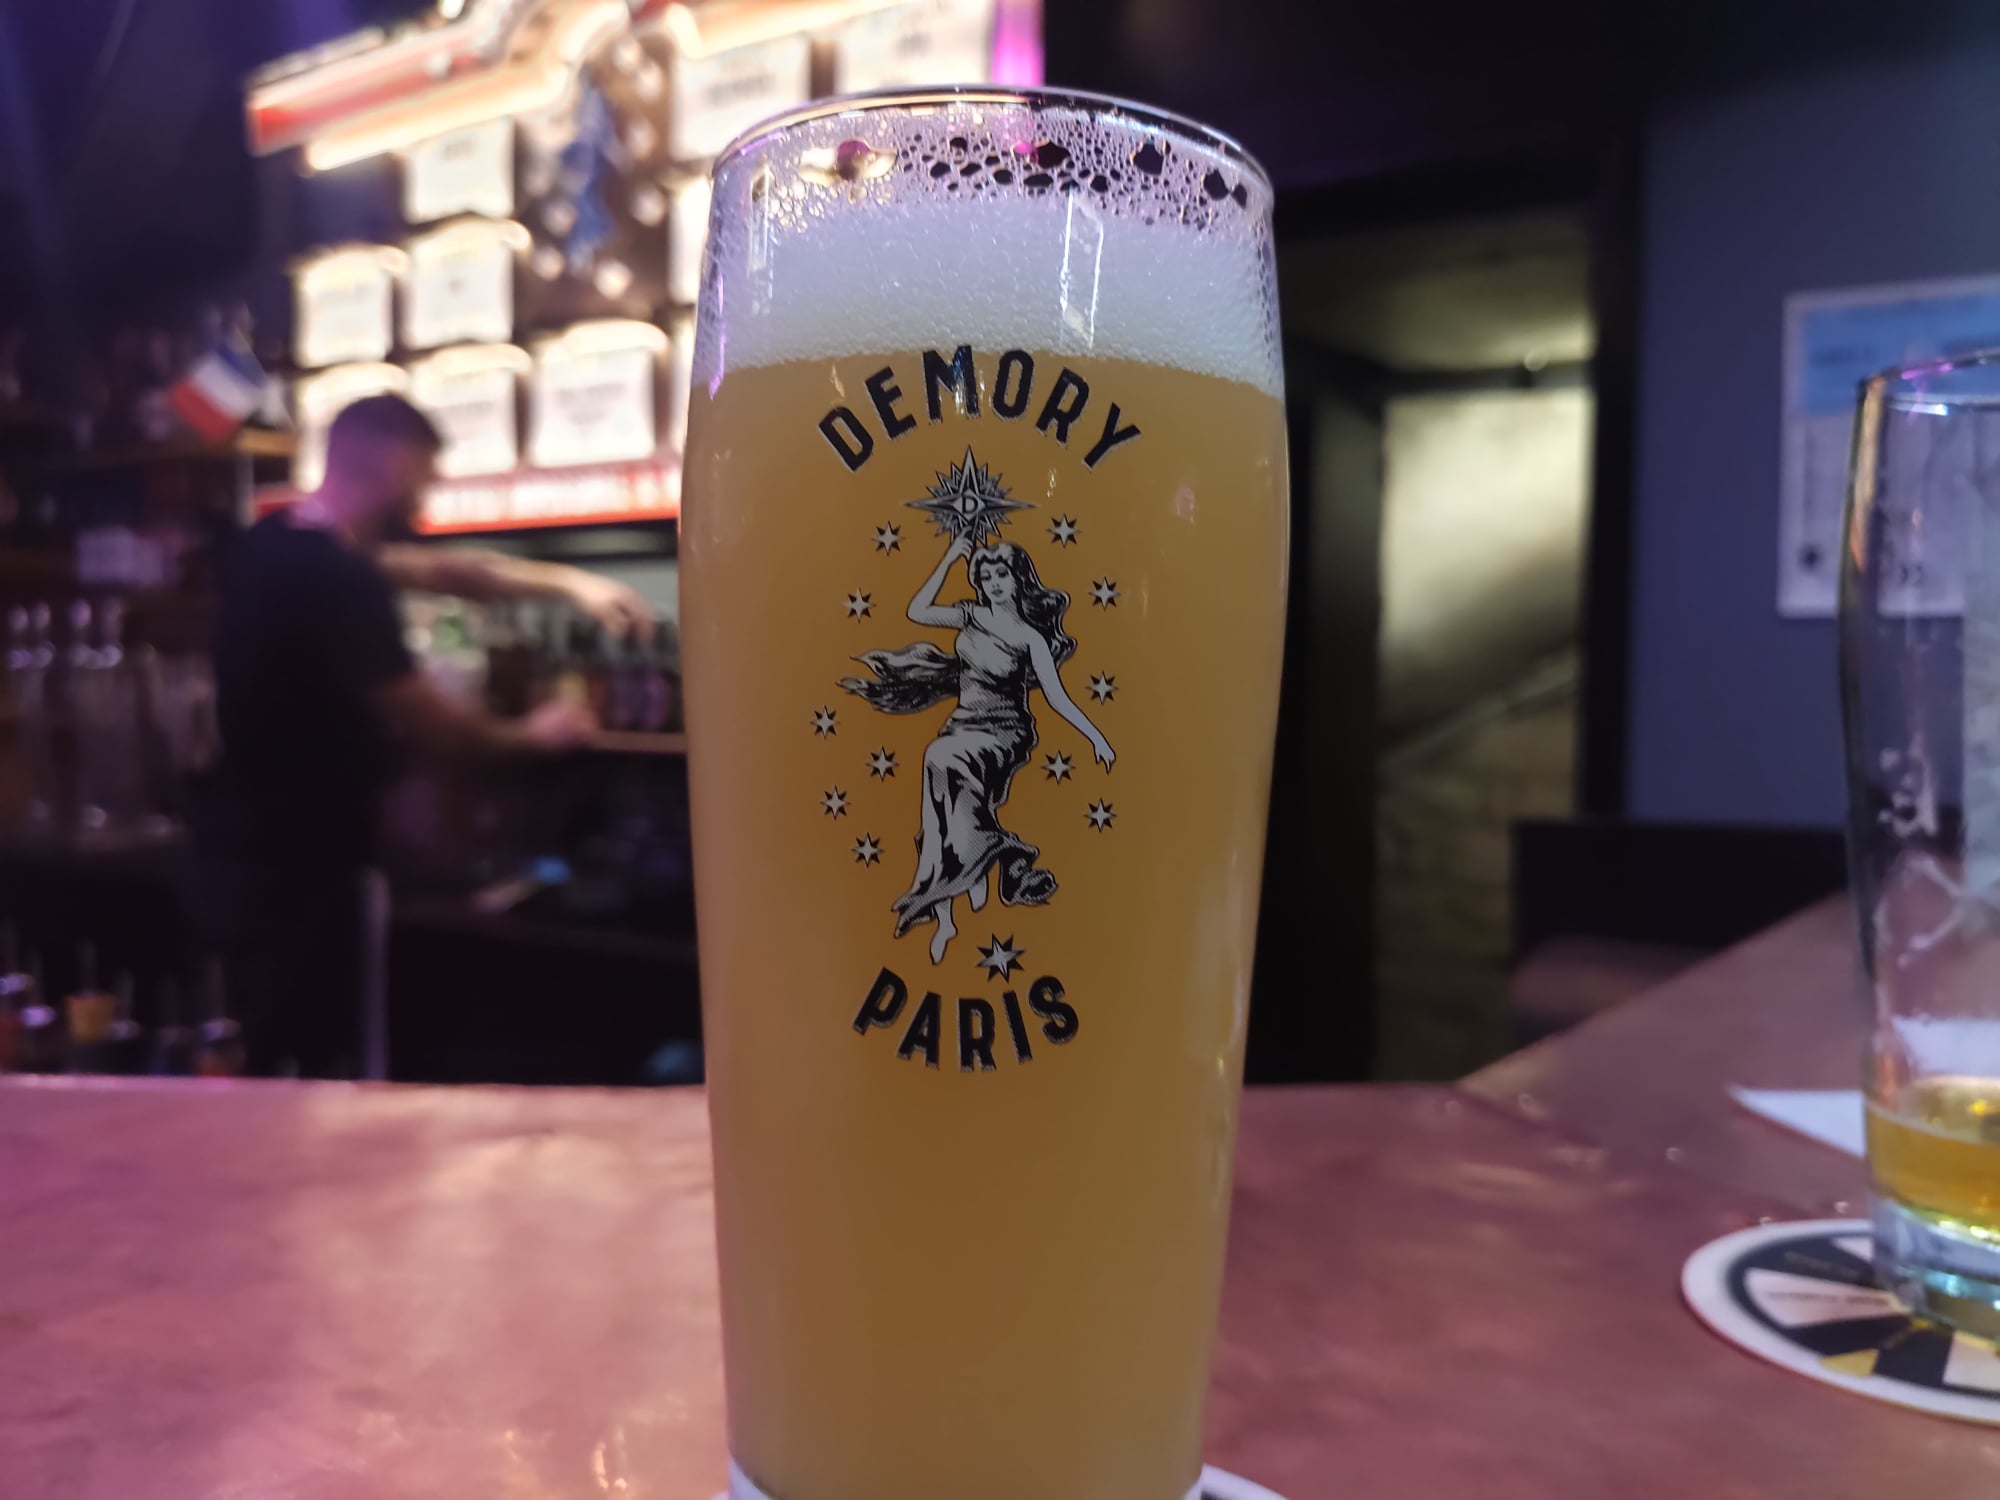 Bière Citra lager - Demory Paris